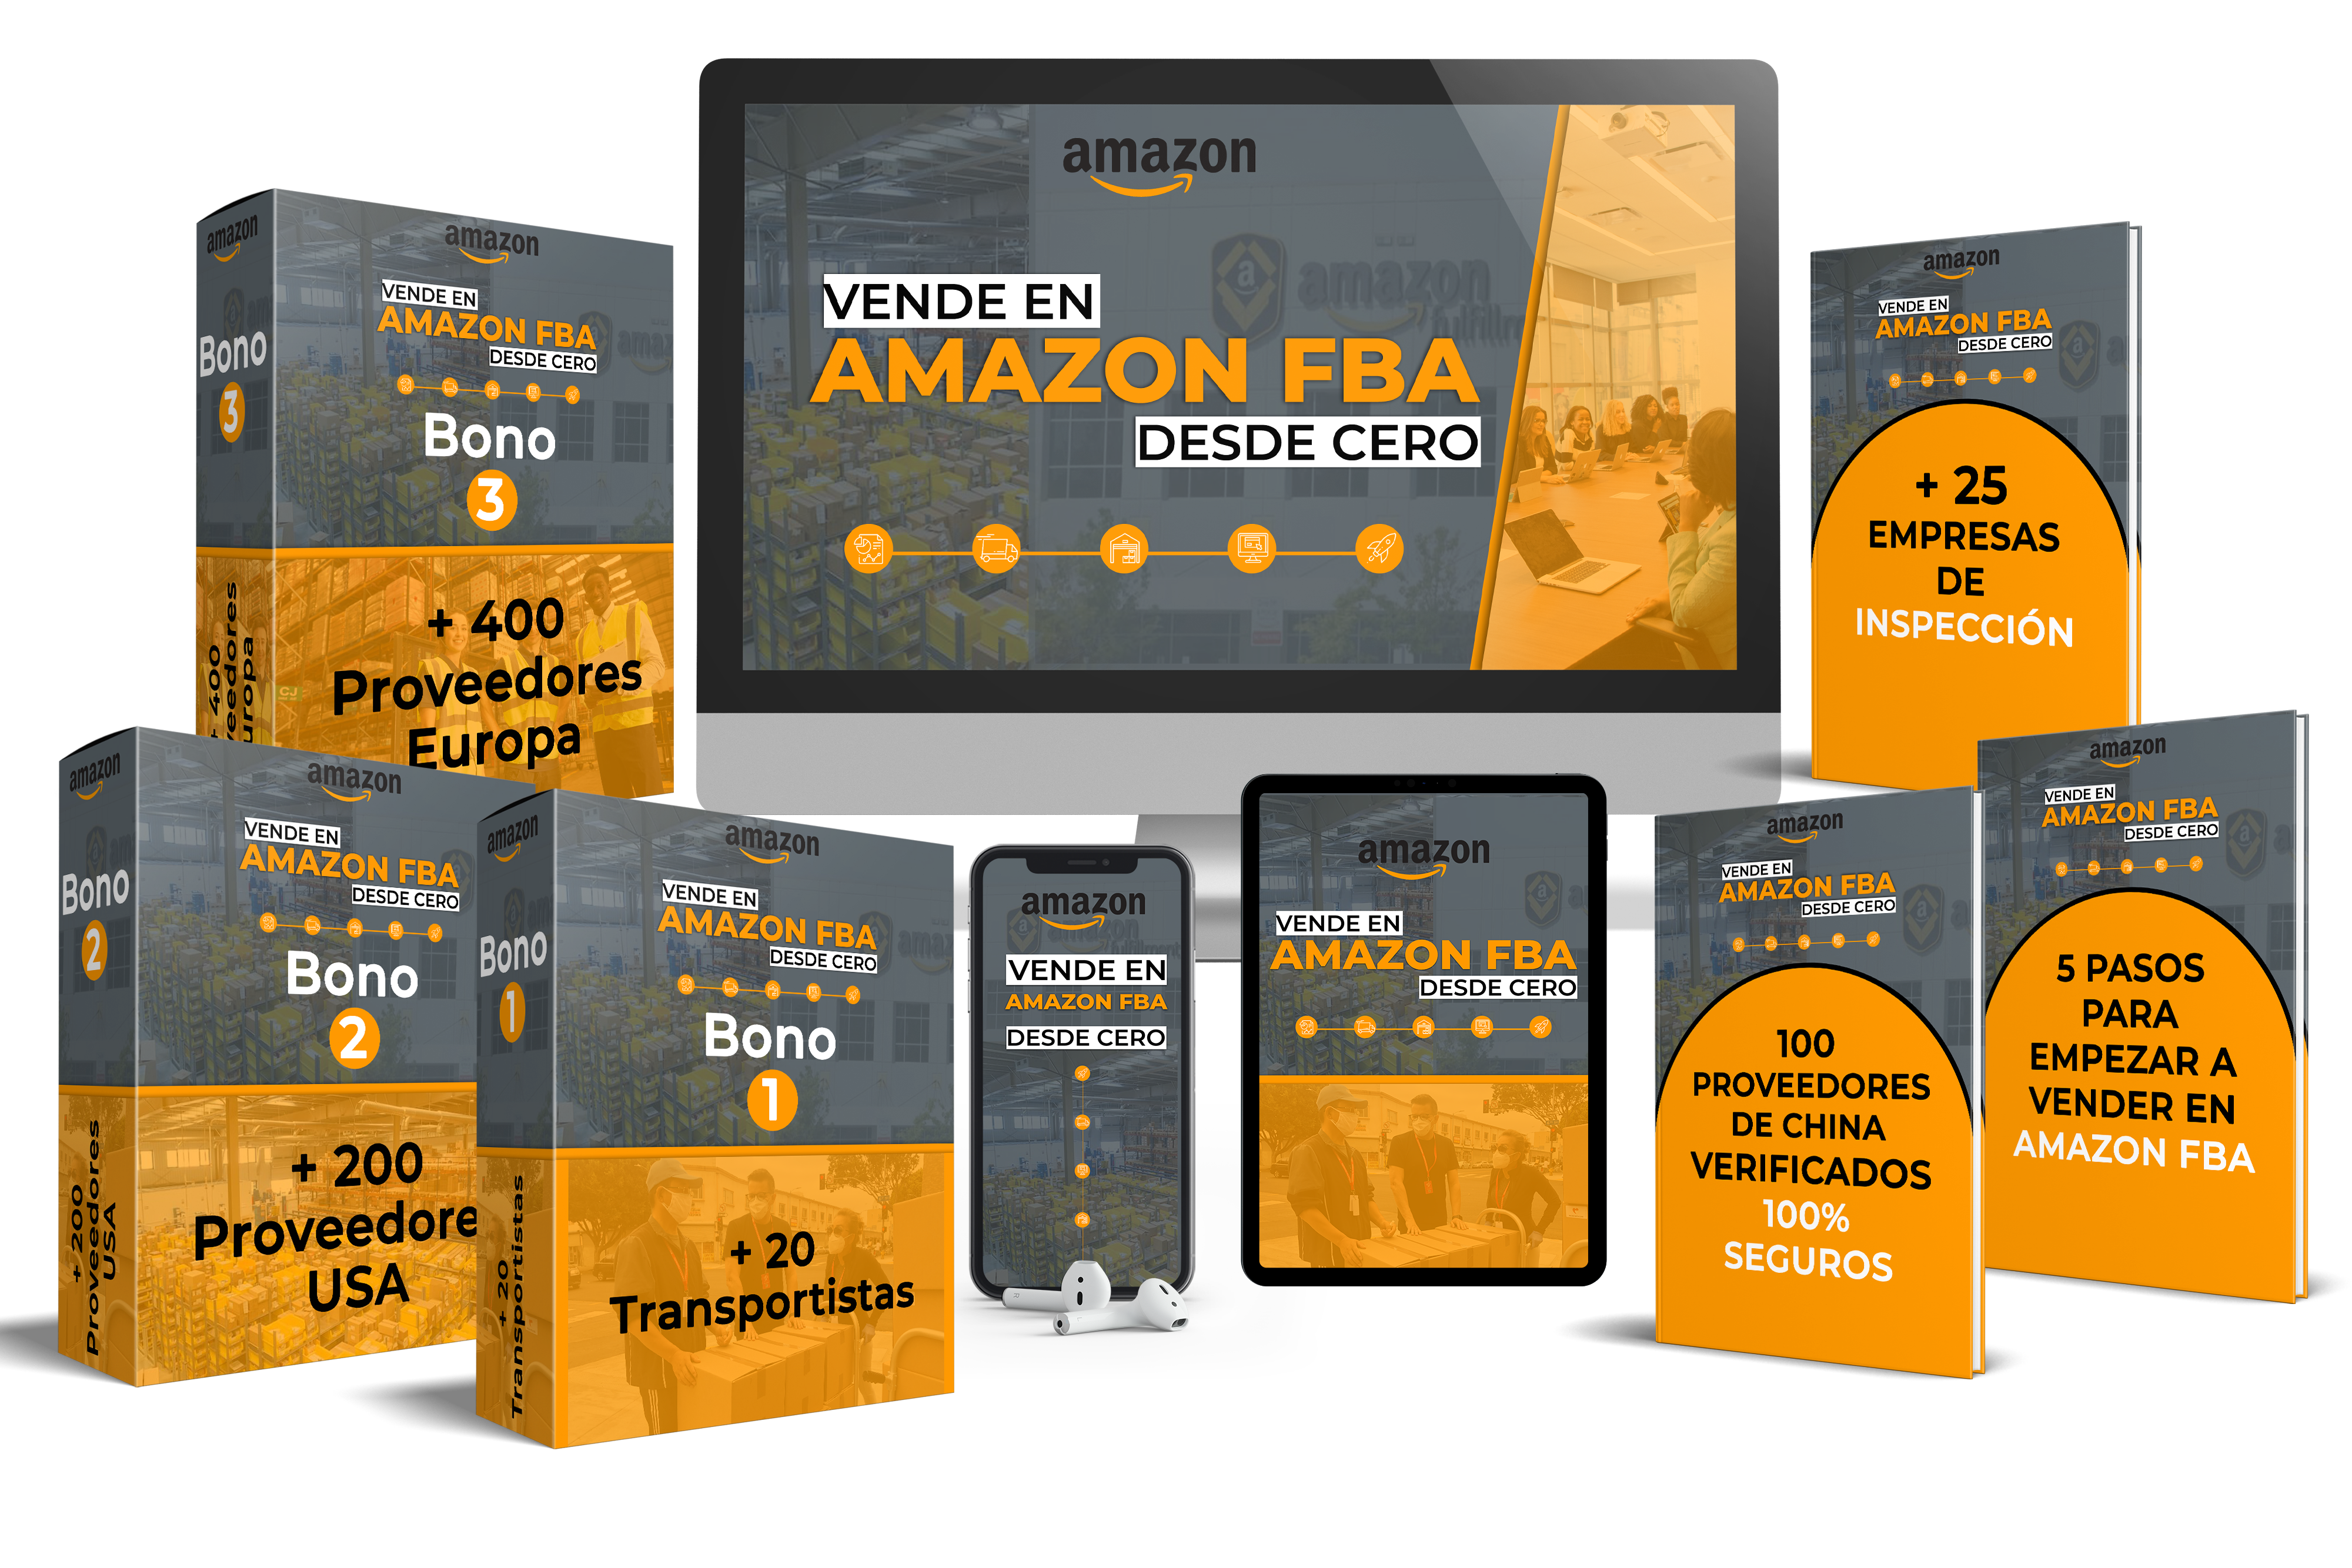 Curso para Vender en Amazon FBA